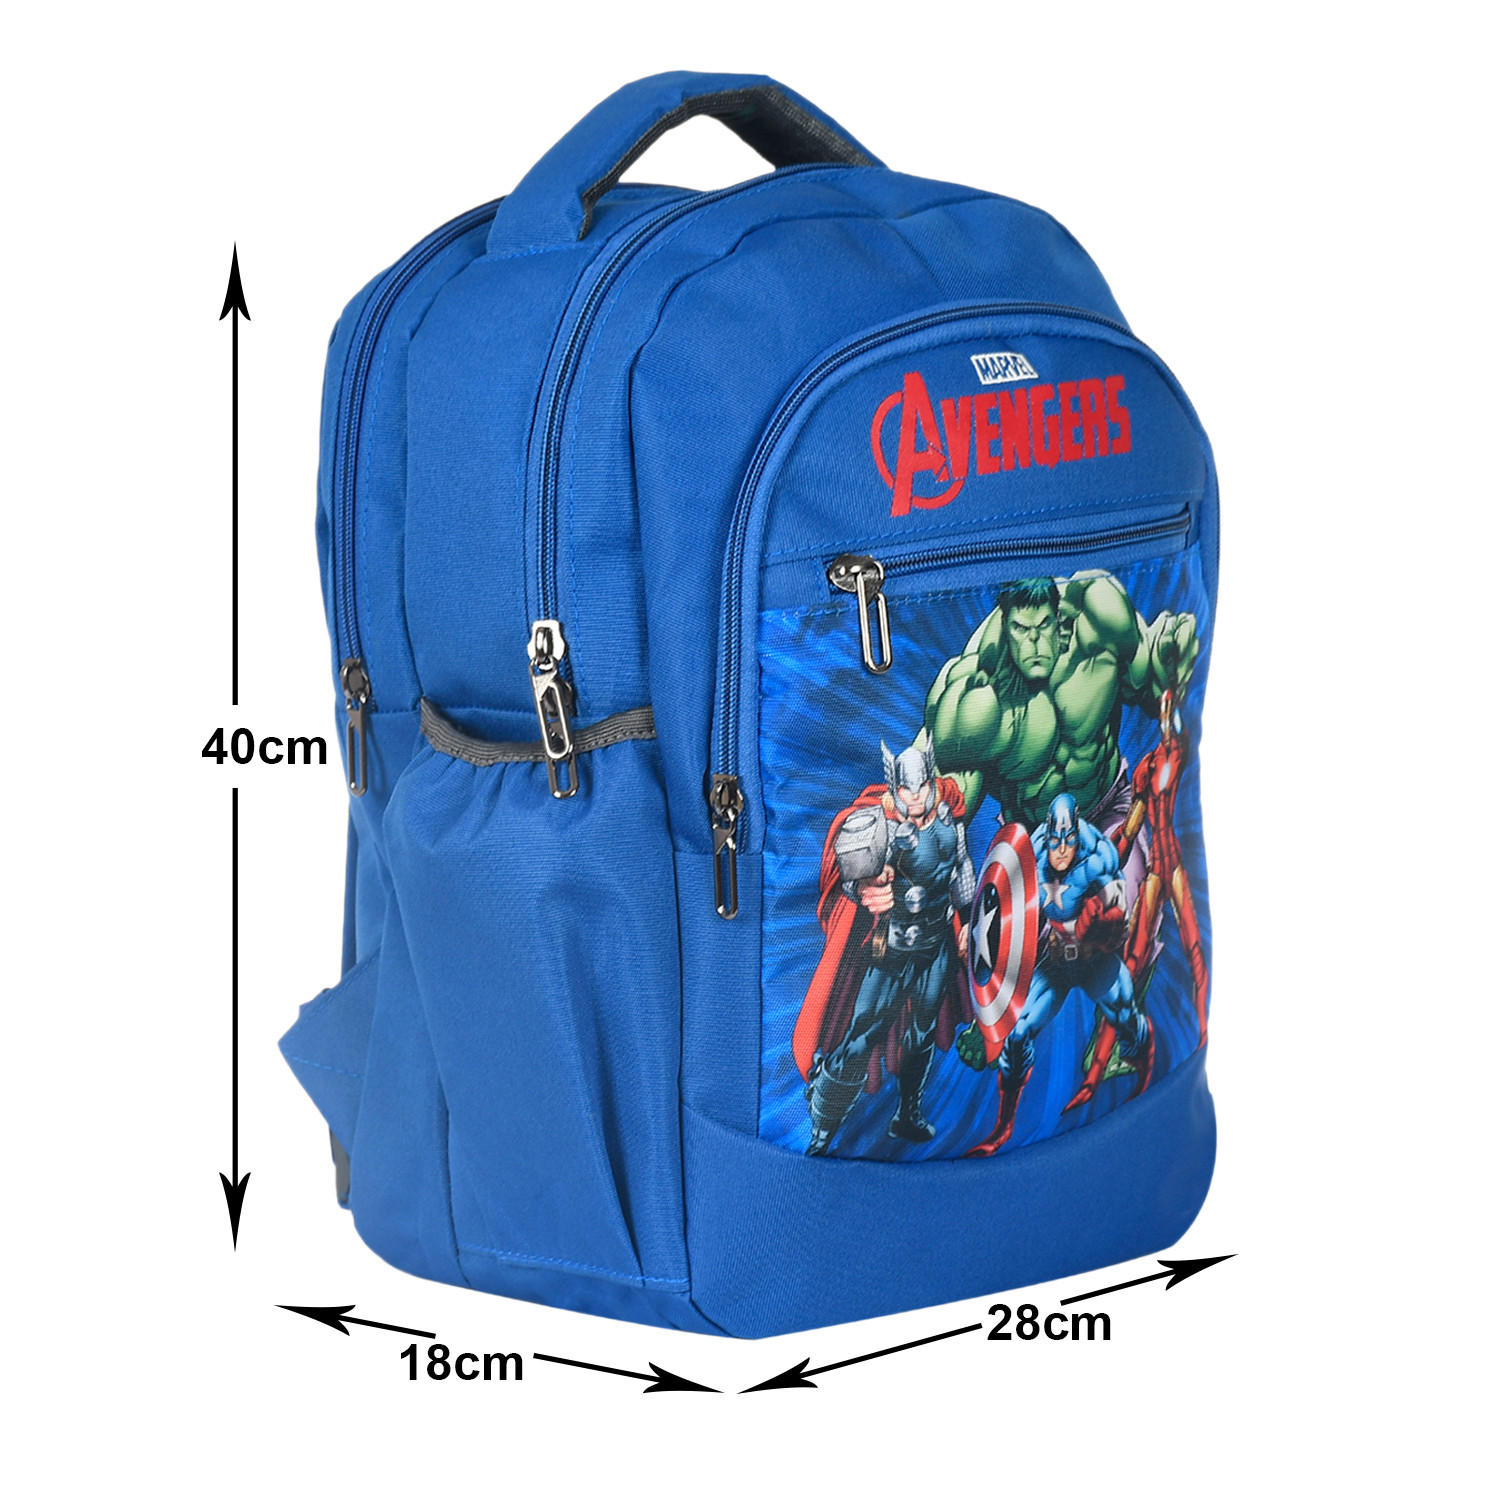 Kuber Industries Marvel Avengers School Bag for Kids|Stylish Backpacks for Kids|Rexine Waterproof Shoulder Straps Bag (Blue)